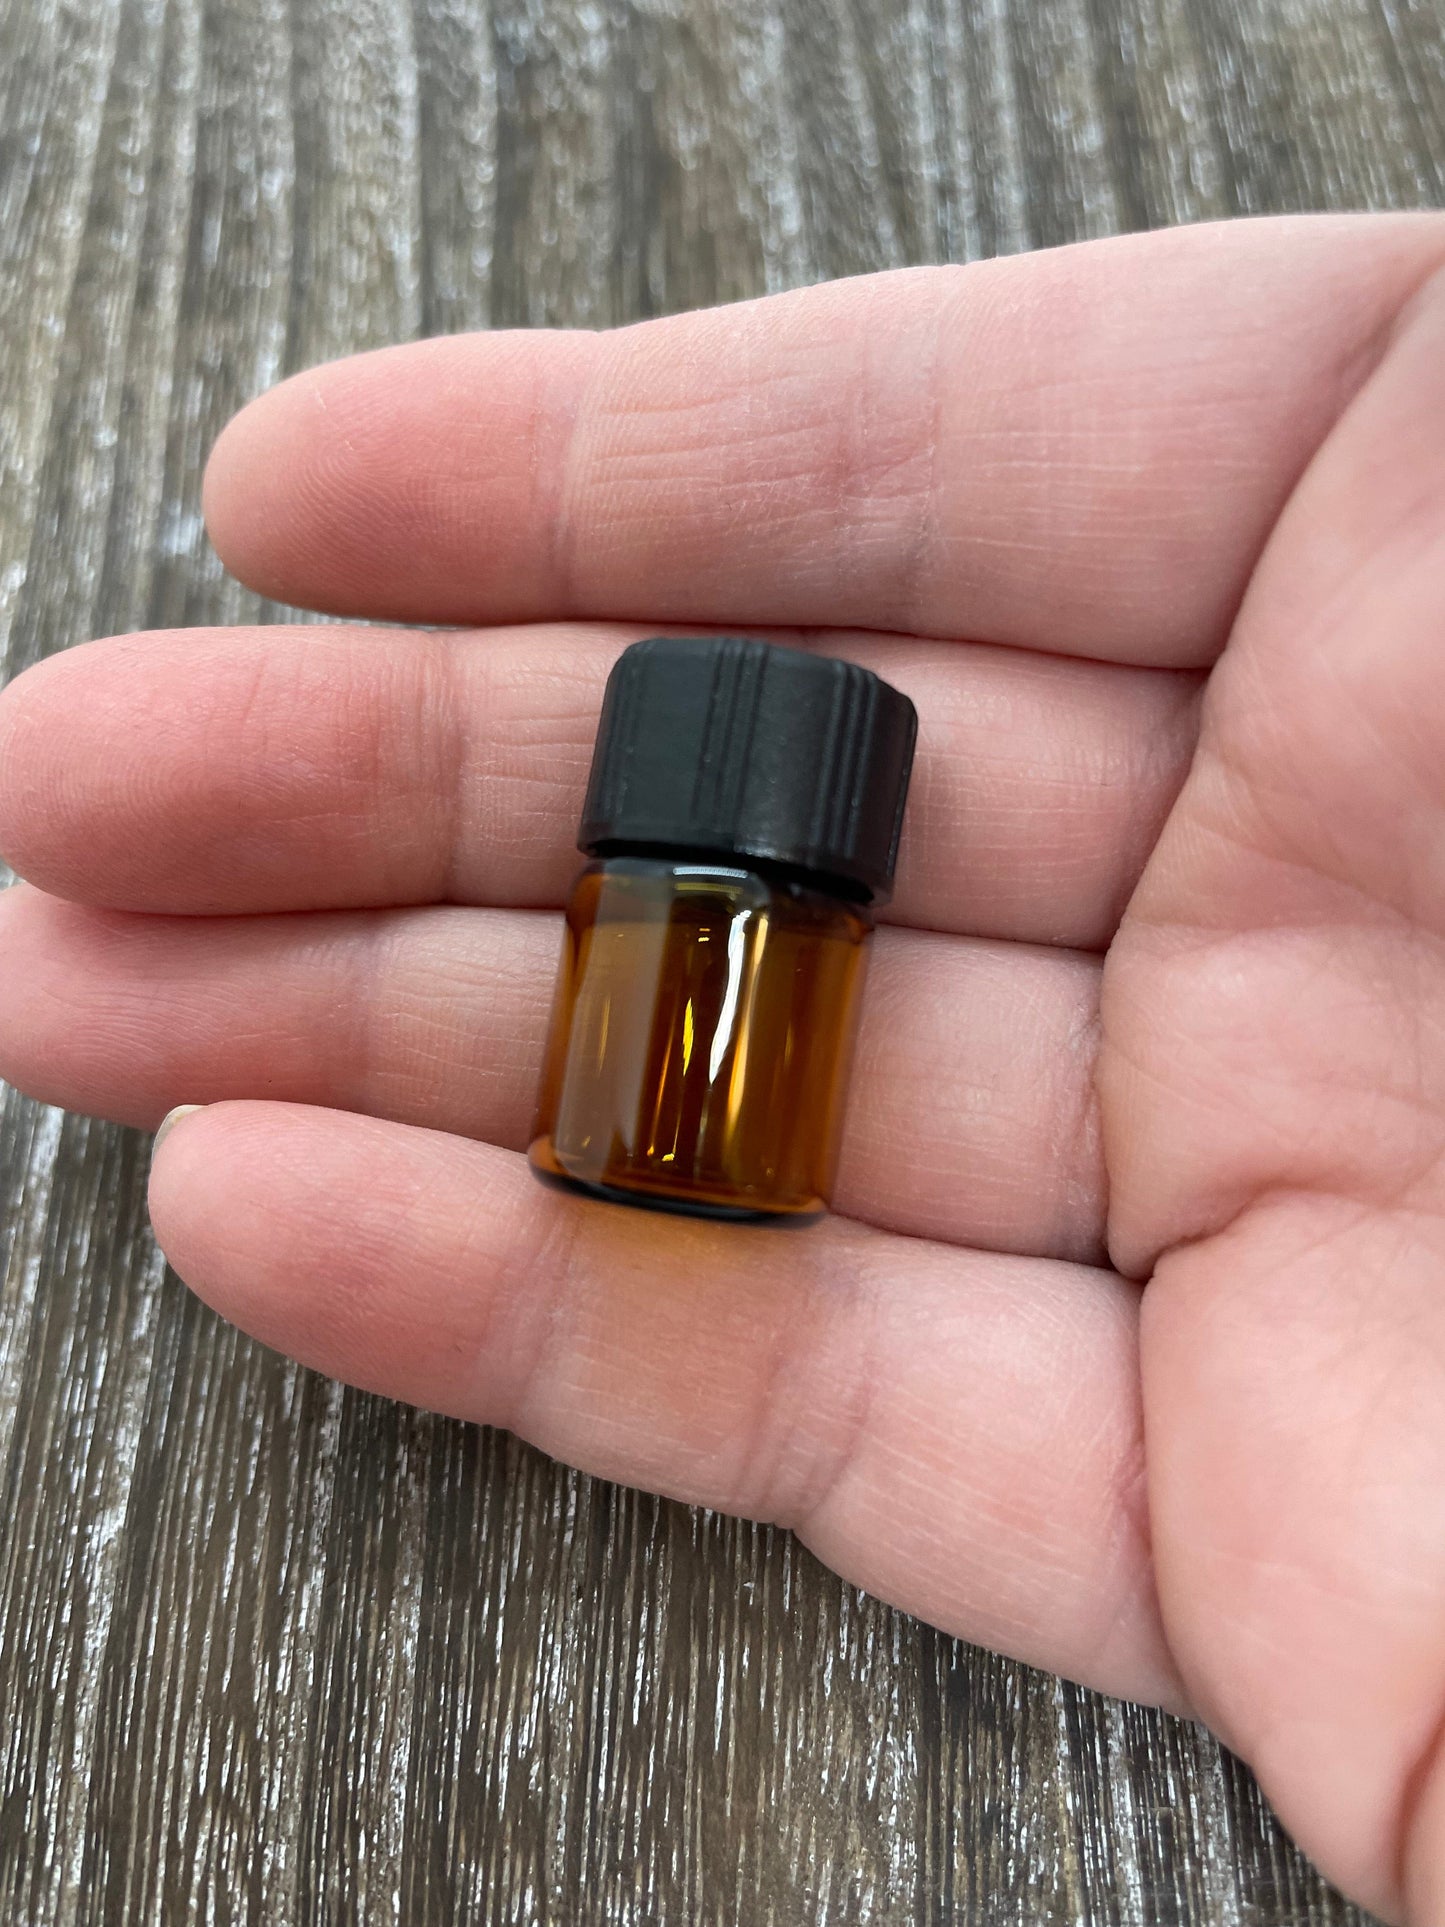 Fiole pour mettre votre huile préférée et utiliser collier et/ou stylo aromathérapie